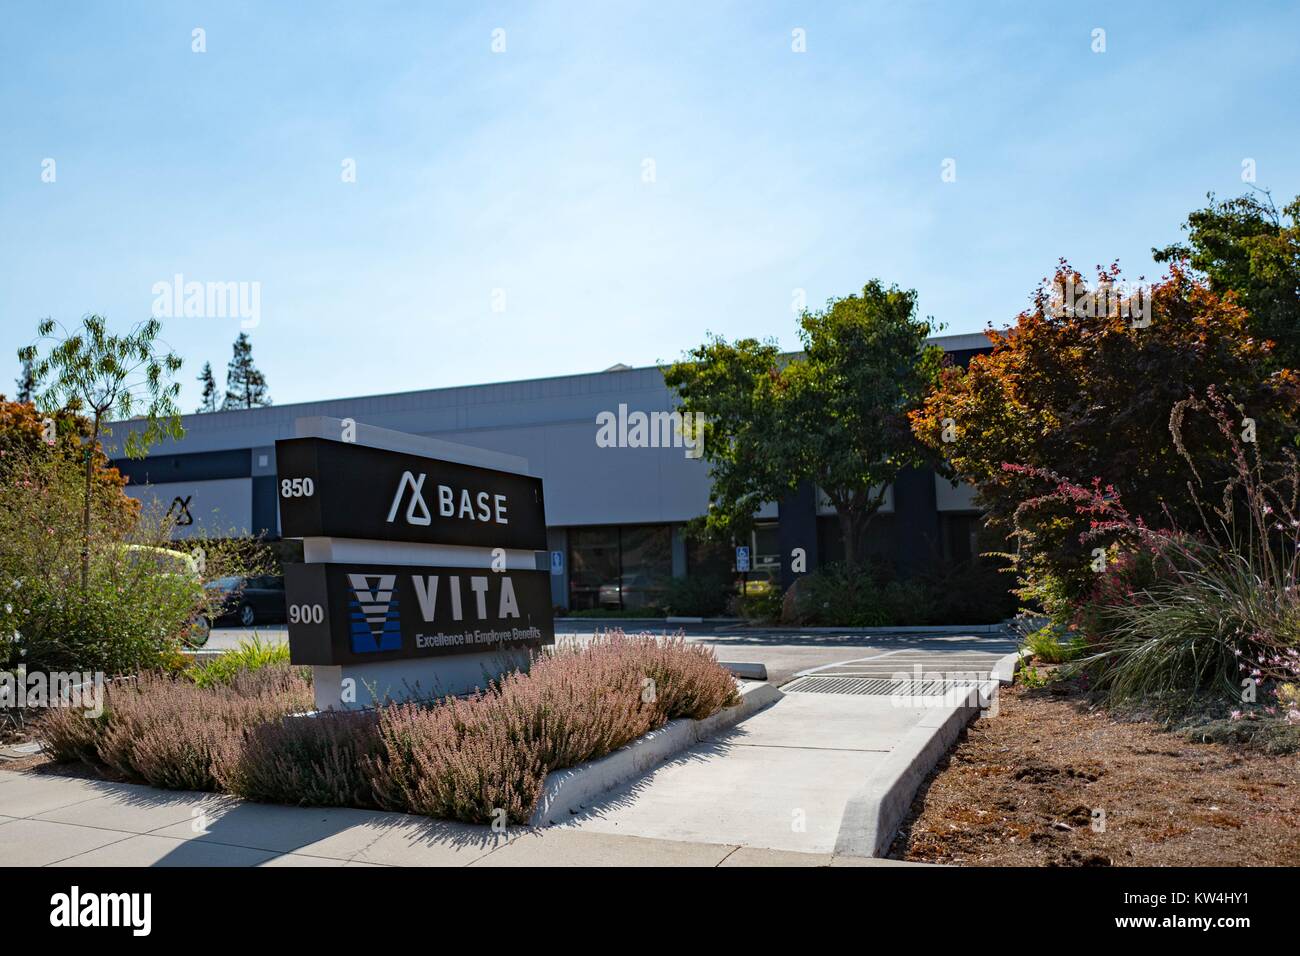 Signage für Customer Relationship Management Software Unternehmen Basis- und Human Resources Management Software Firma Vita im Silicon Valley Stadt Mountain View, Kalifornien, 24. August 2016. Stockfoto